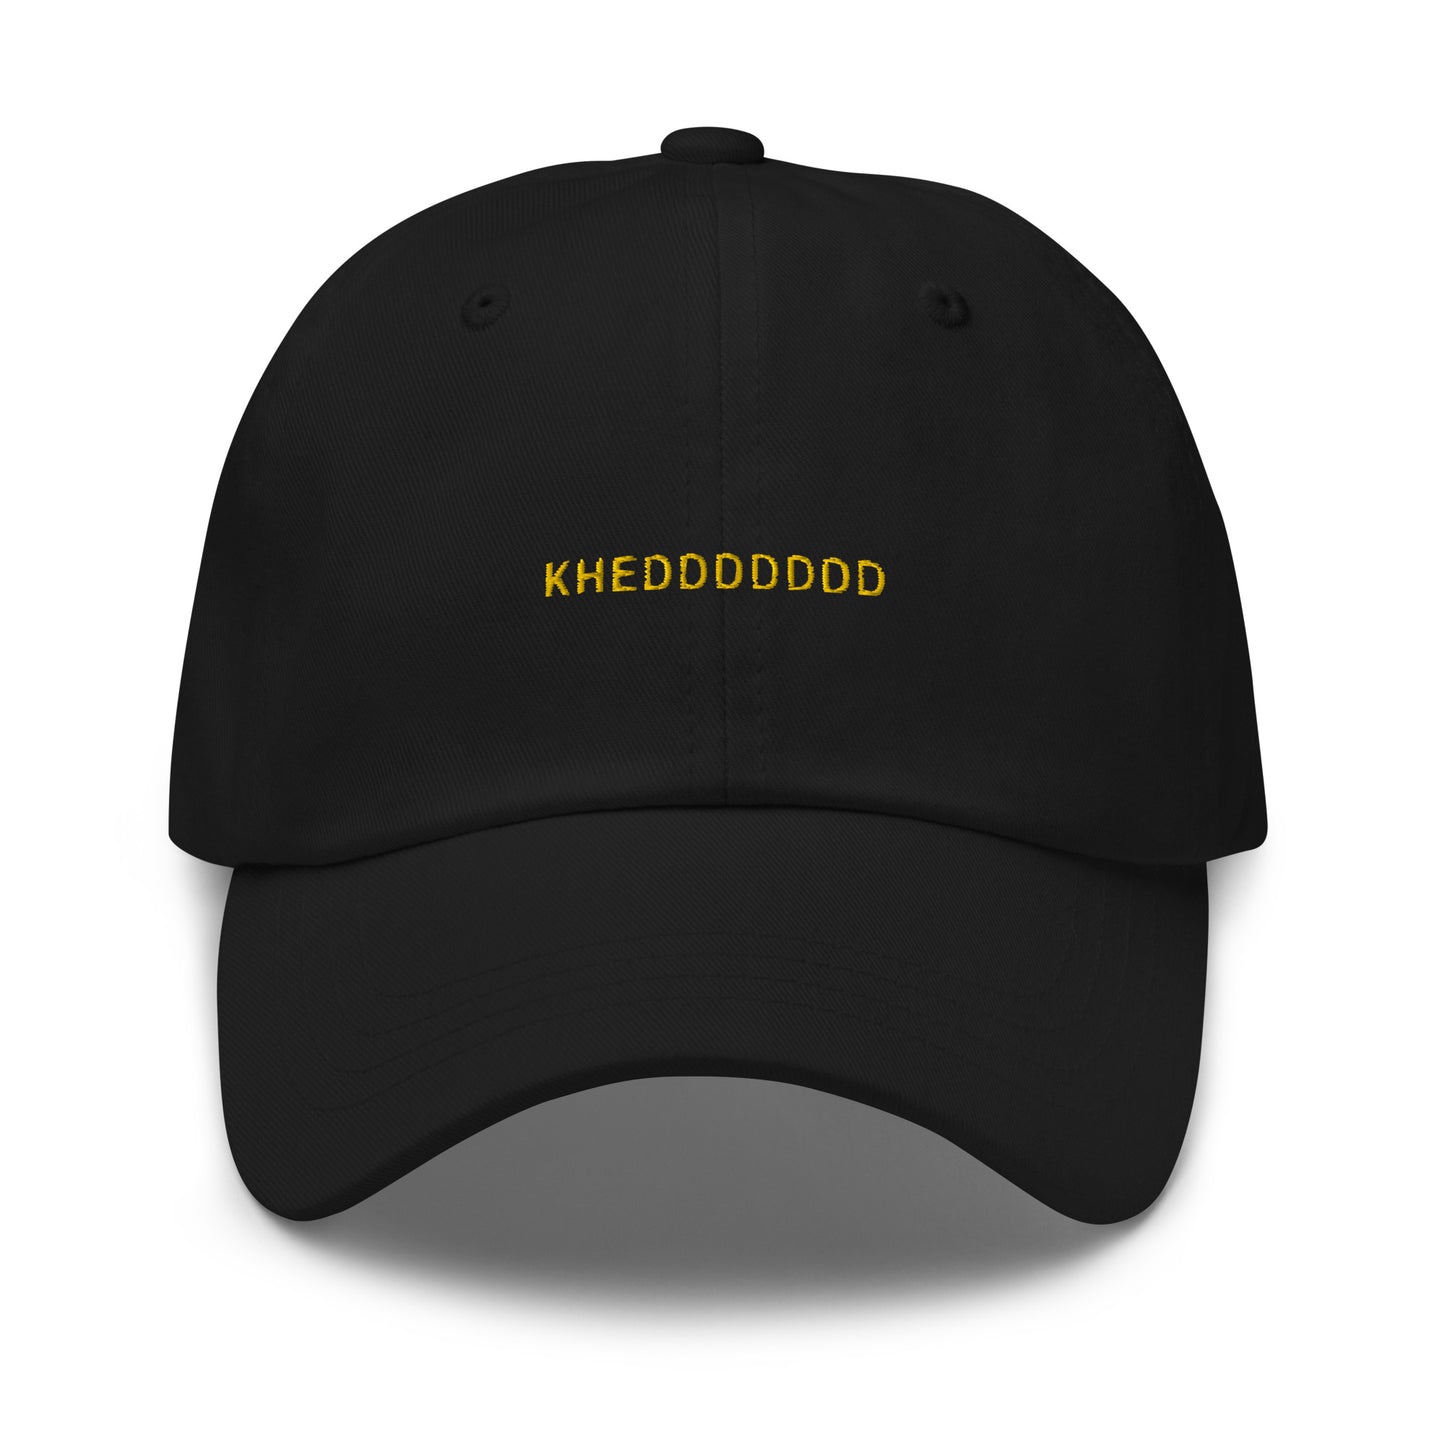 black hat that says "khedddddd" in gold lettering